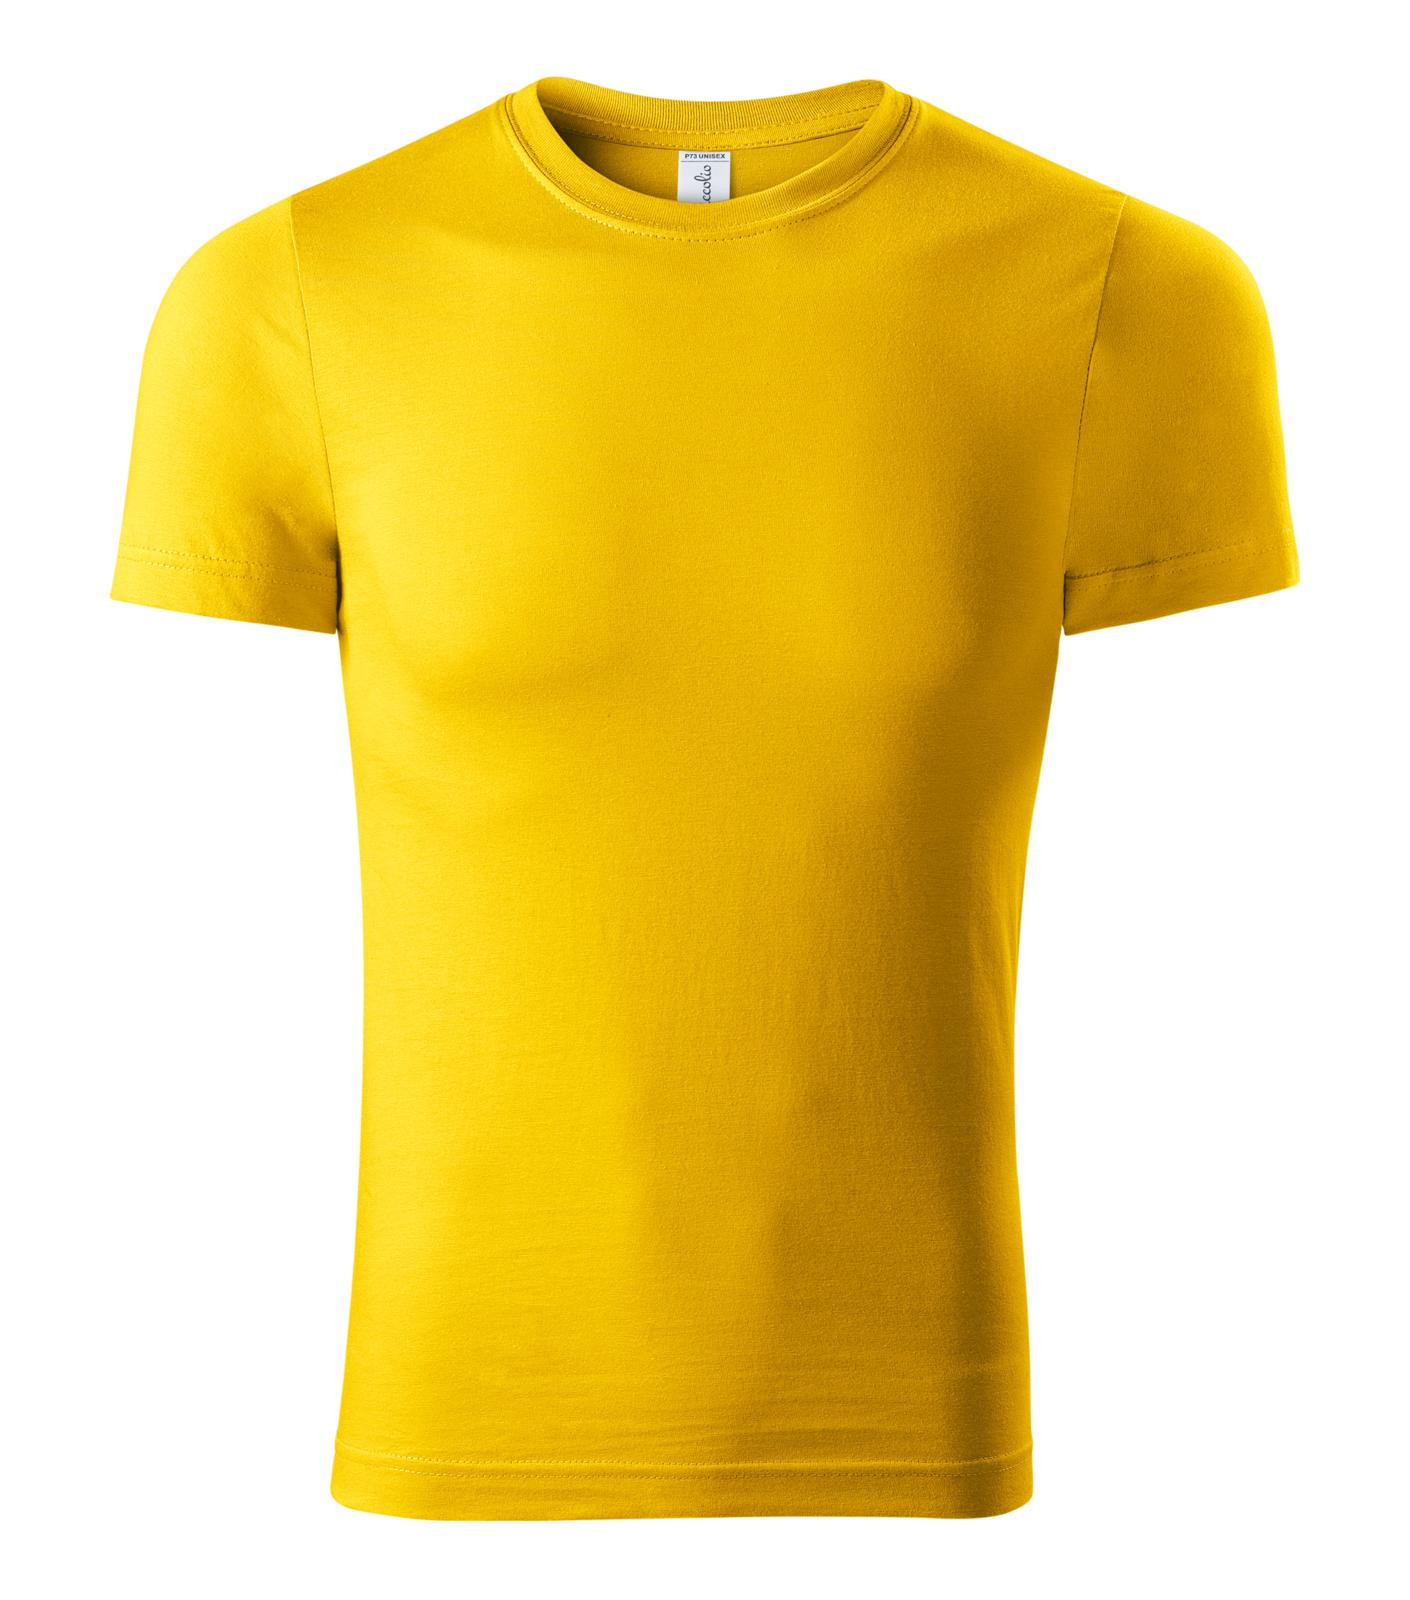 Unisex tričko Piccolio Paint P73 - veľkosť: M, farba: žltá